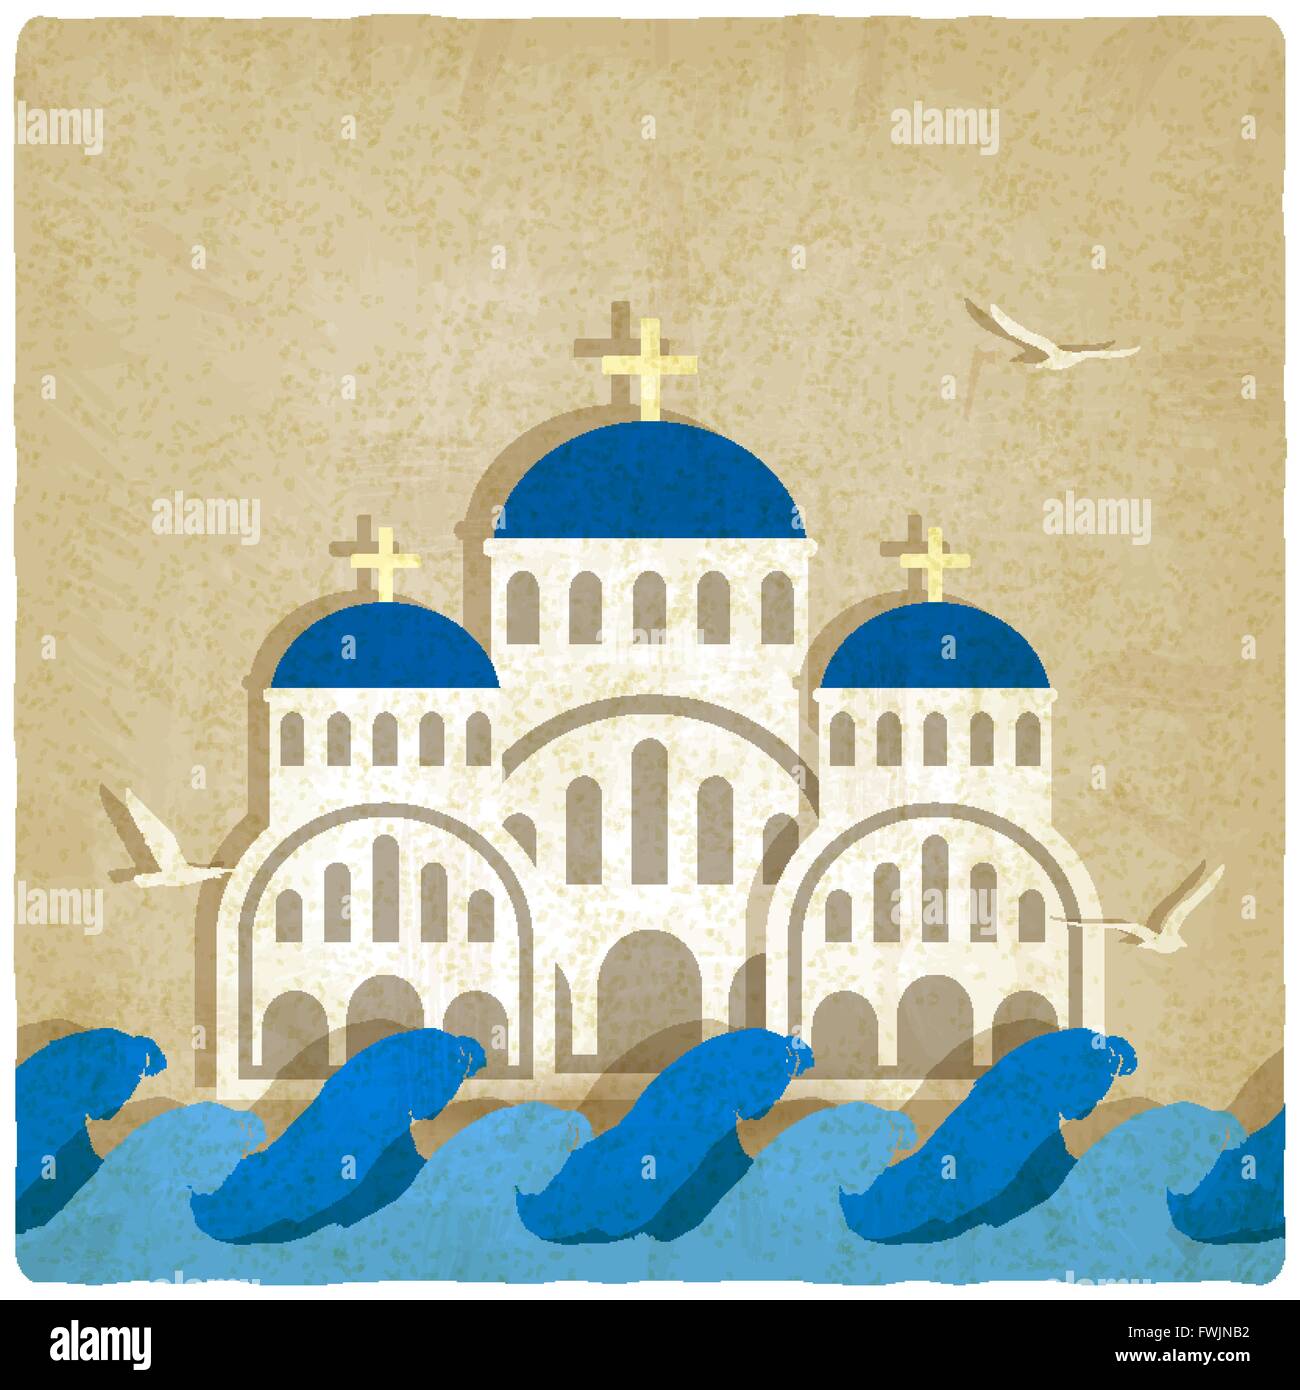 Griechische Kirche griechische Kirche in der Nähe von Blau des Meeres. Vektor-Illustration - Eps 10 Stock Vektor